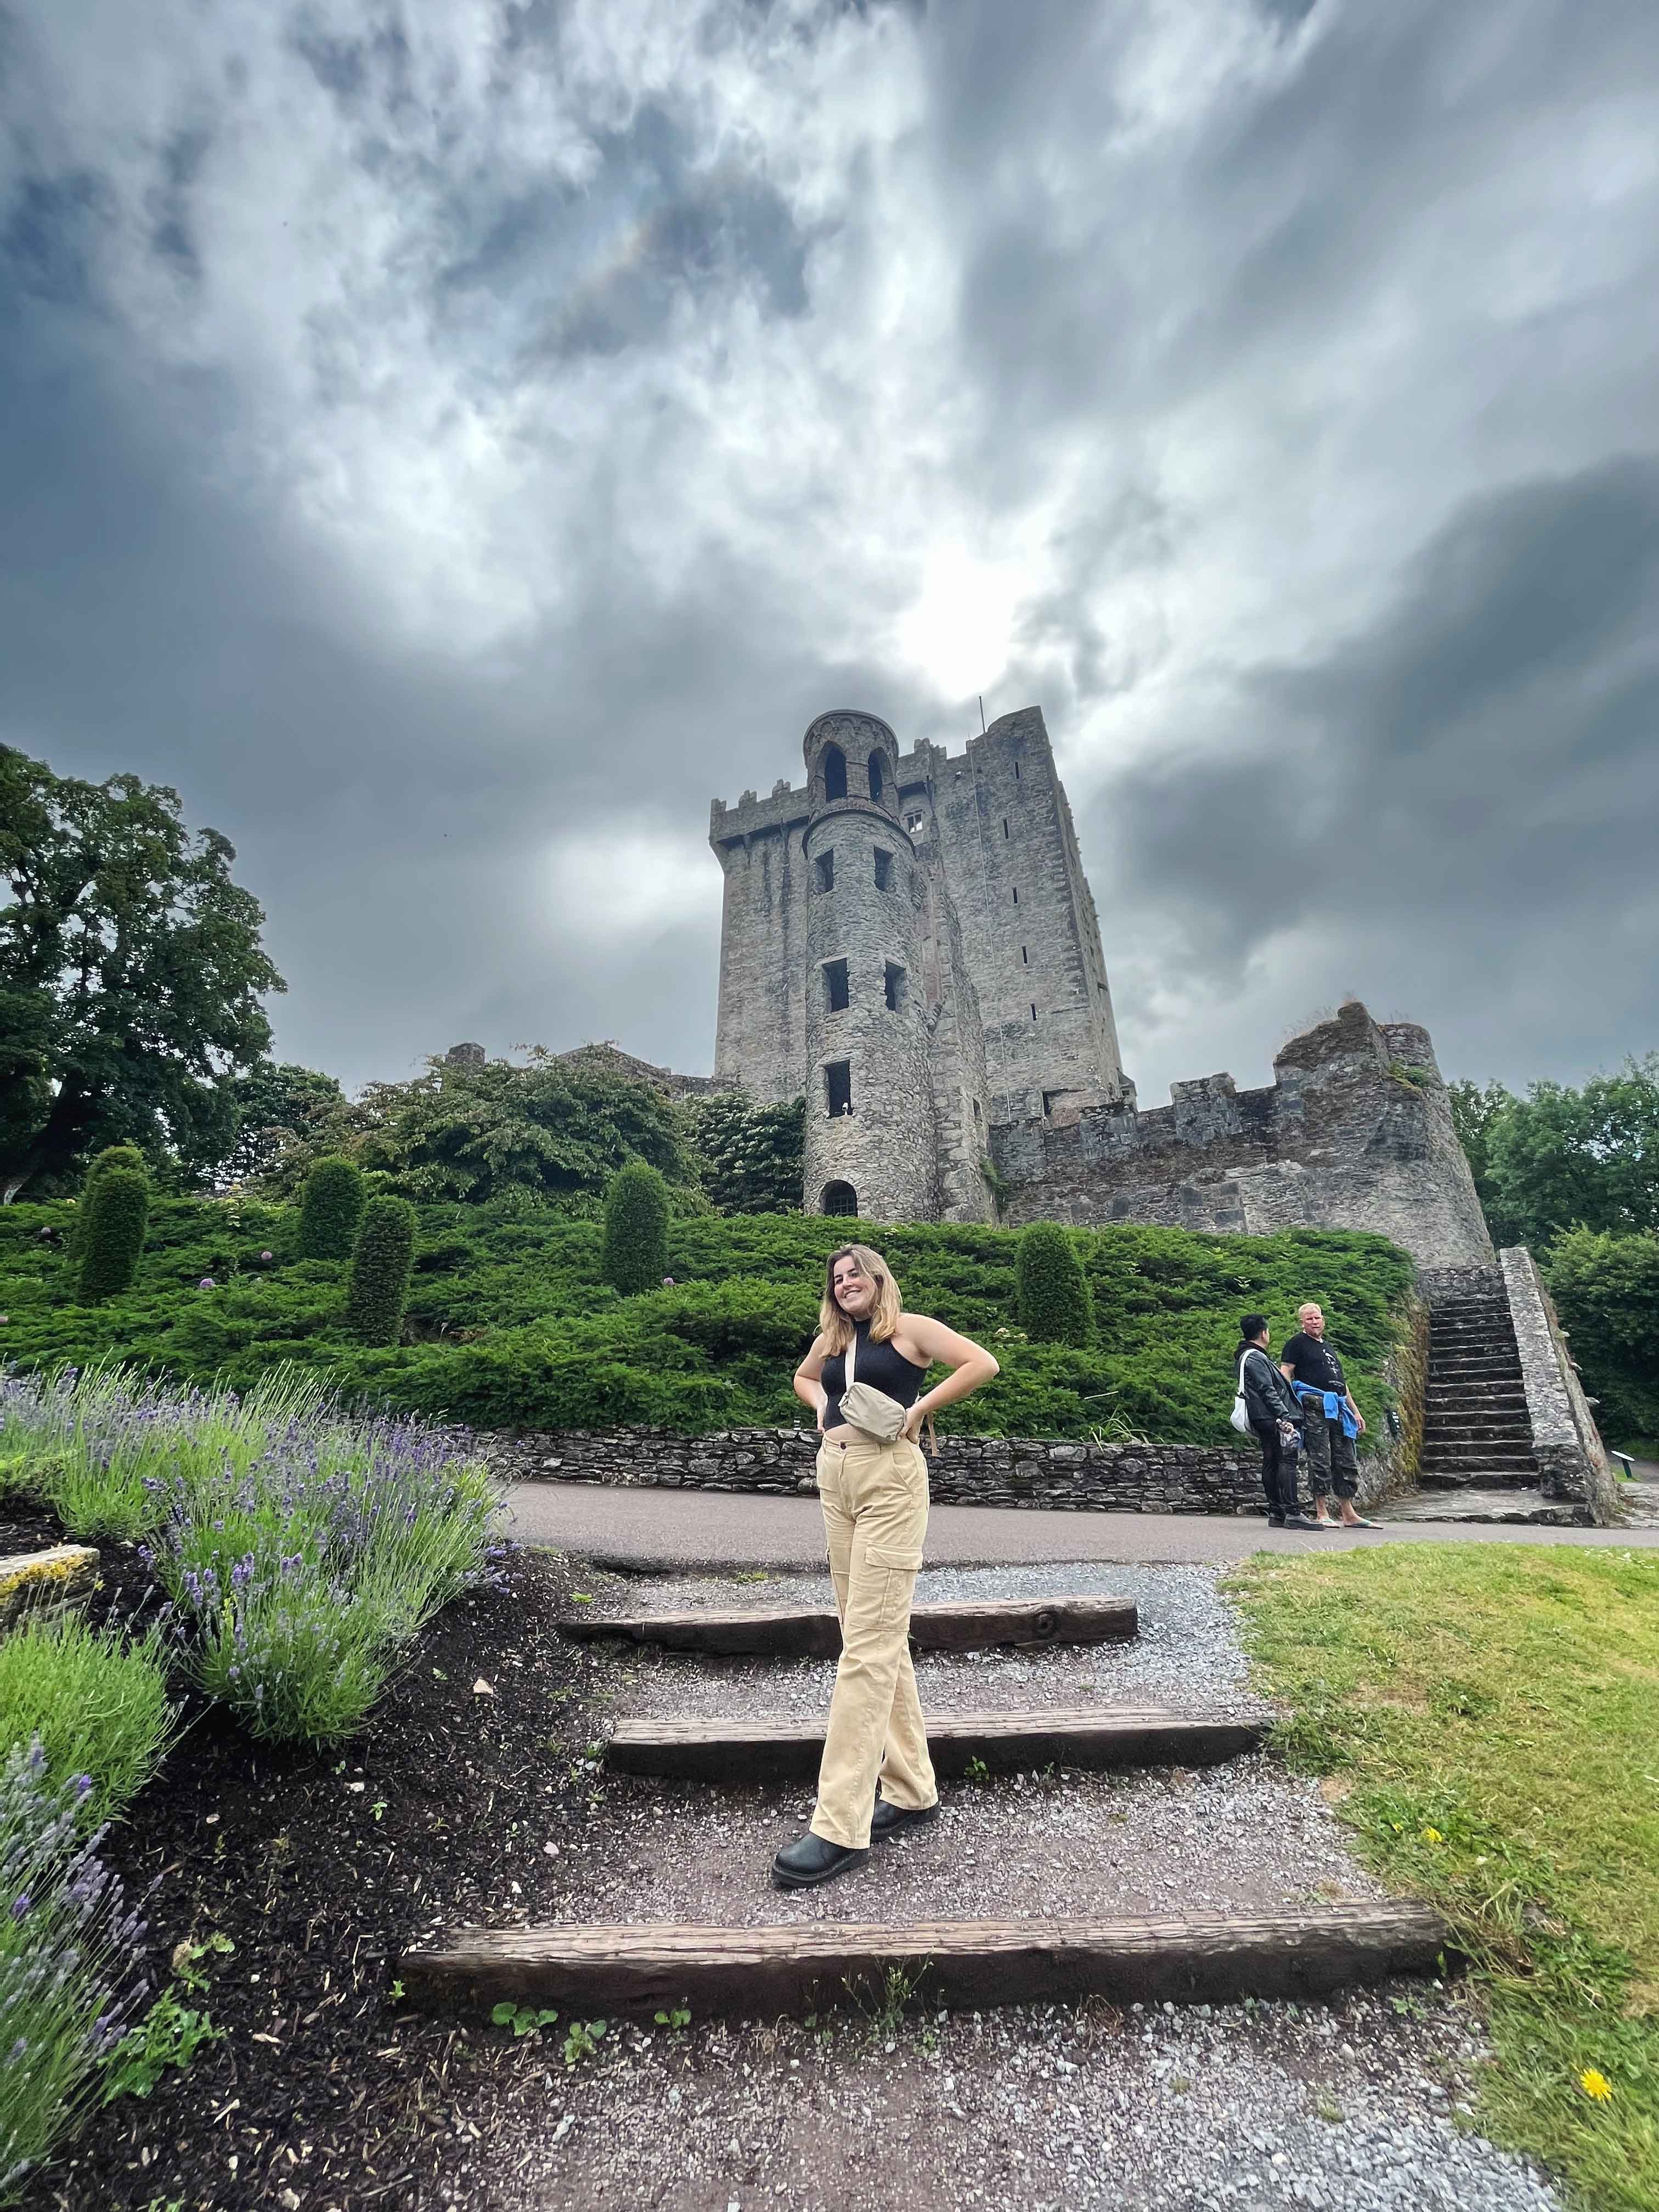 Student outside Blarney Castle in Ireland